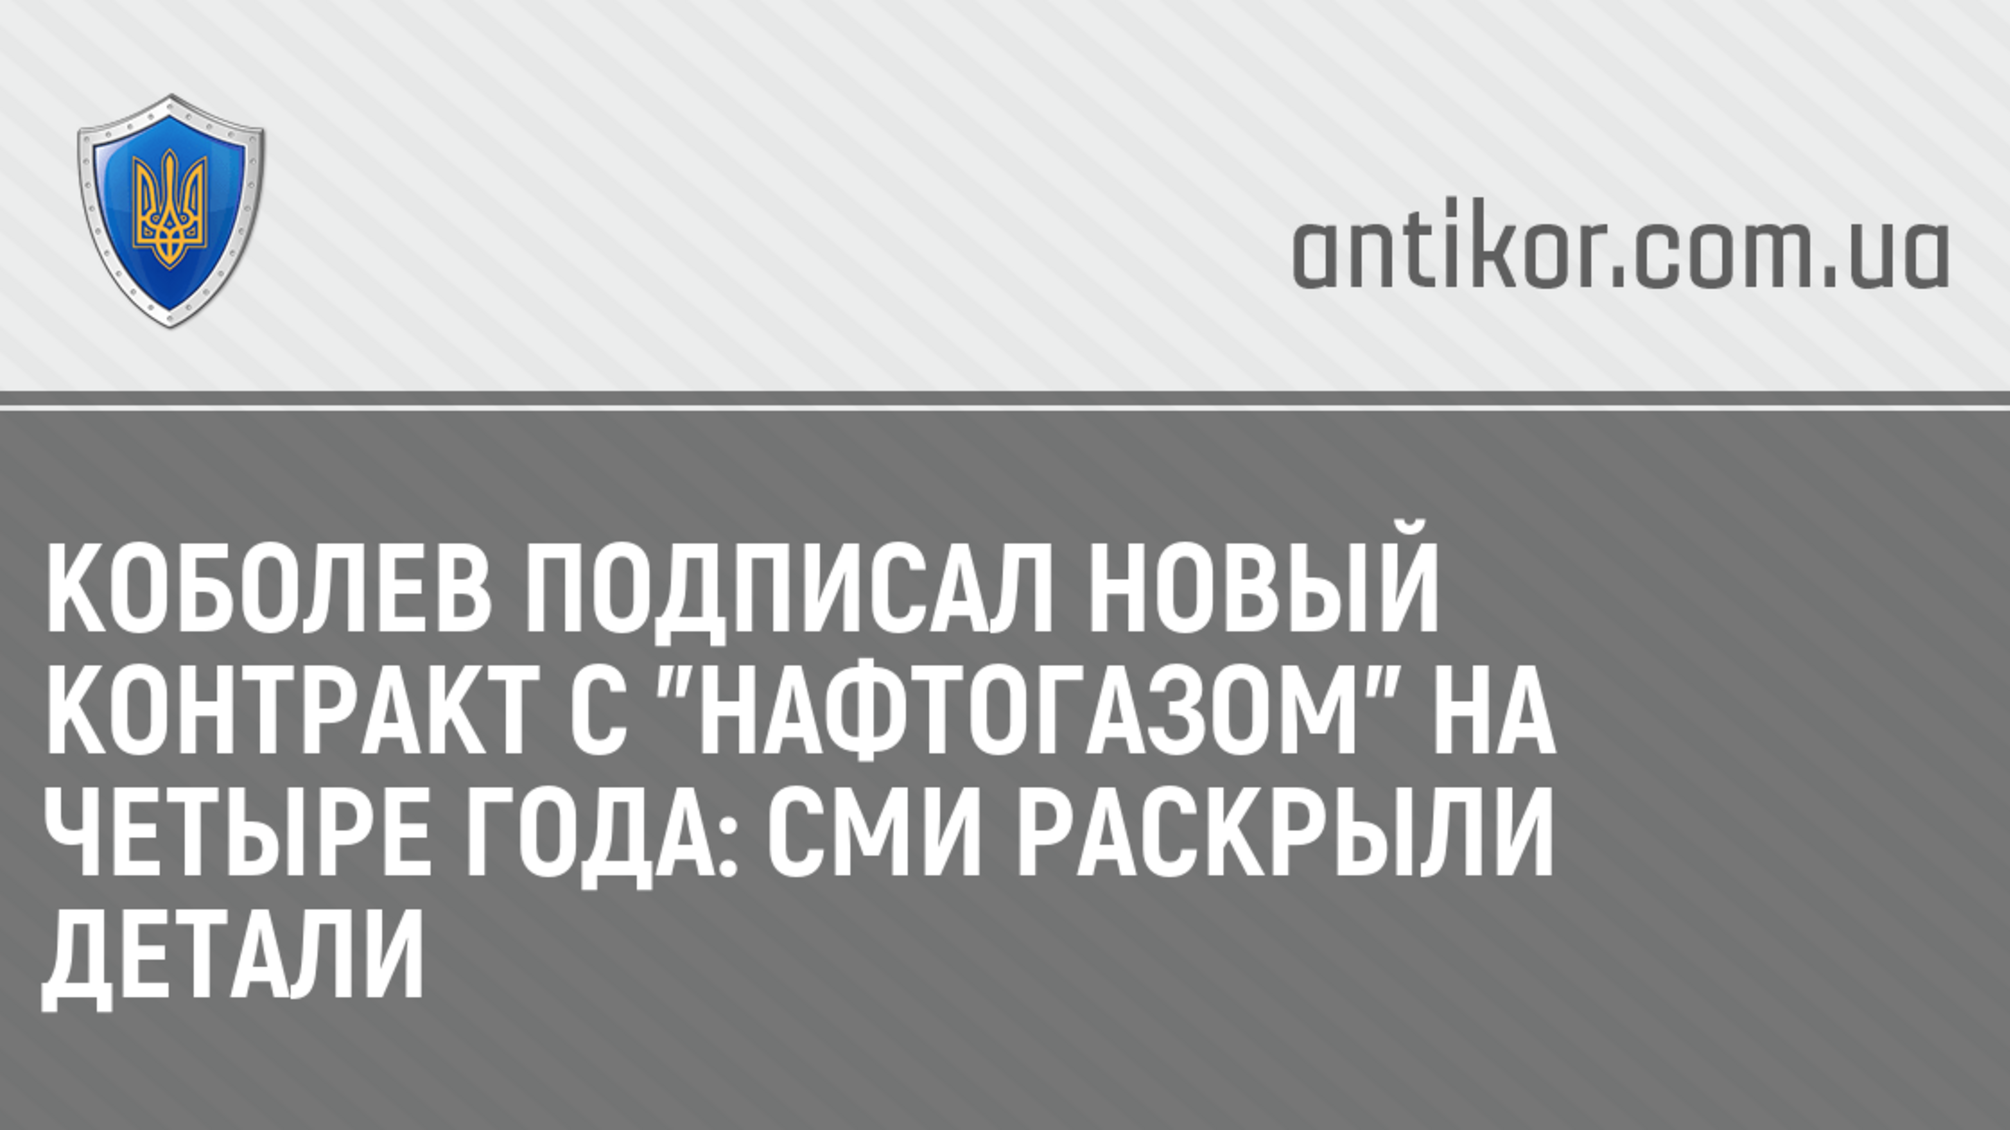 Коболев подписал новый контракт с 'Нафтогазом' на четыре года: СМИ раскрыли детали